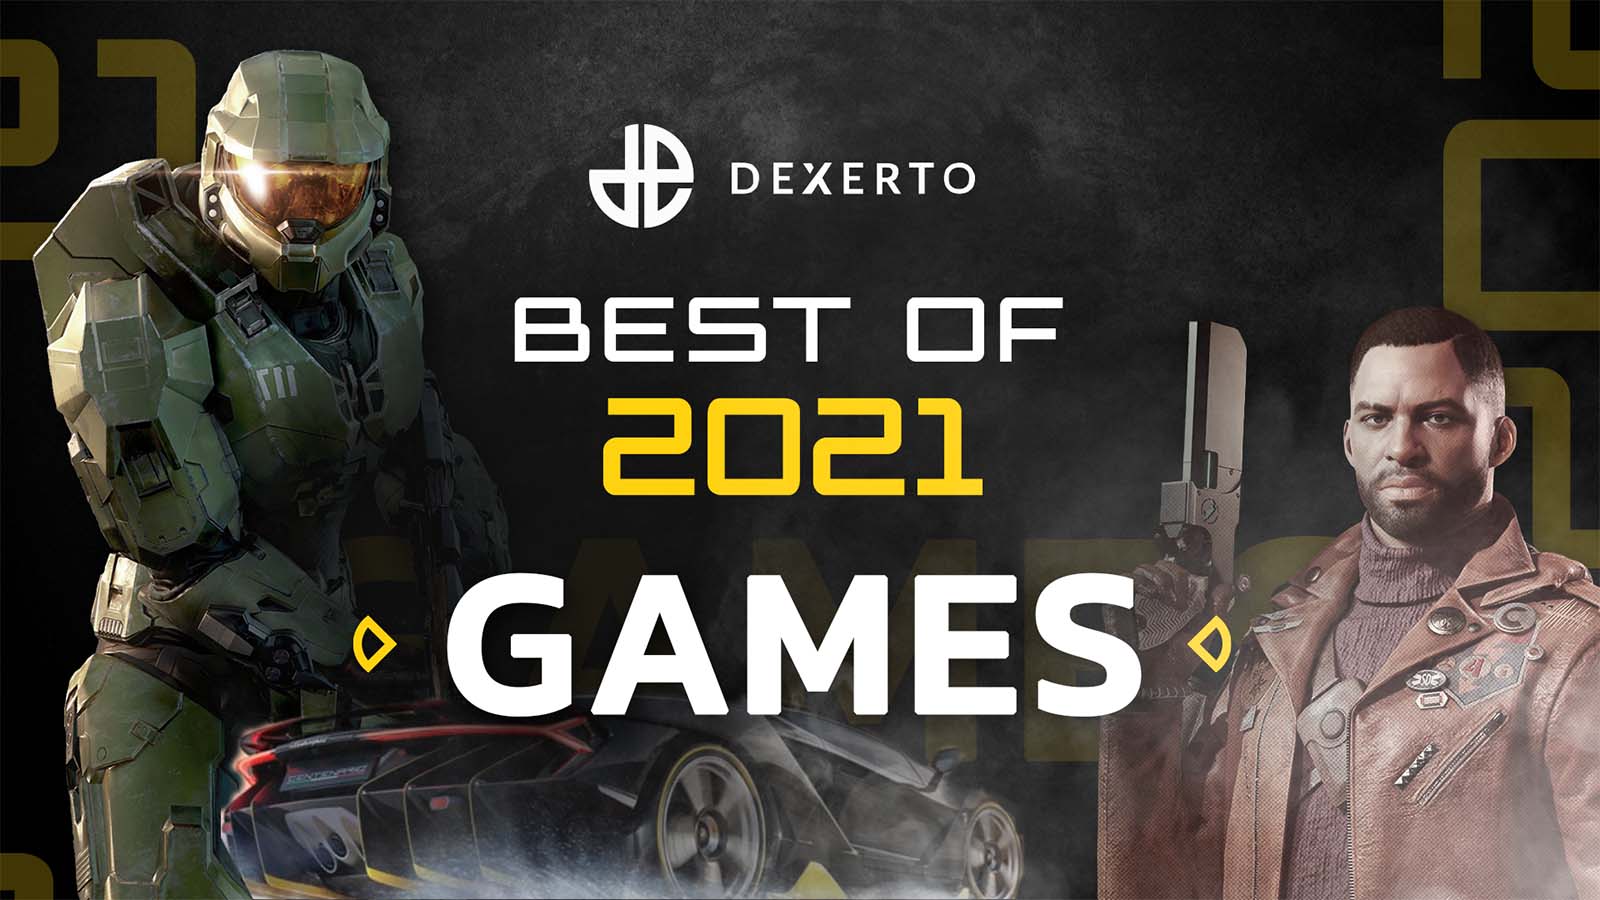 Dexerto's best games of 2021 winners